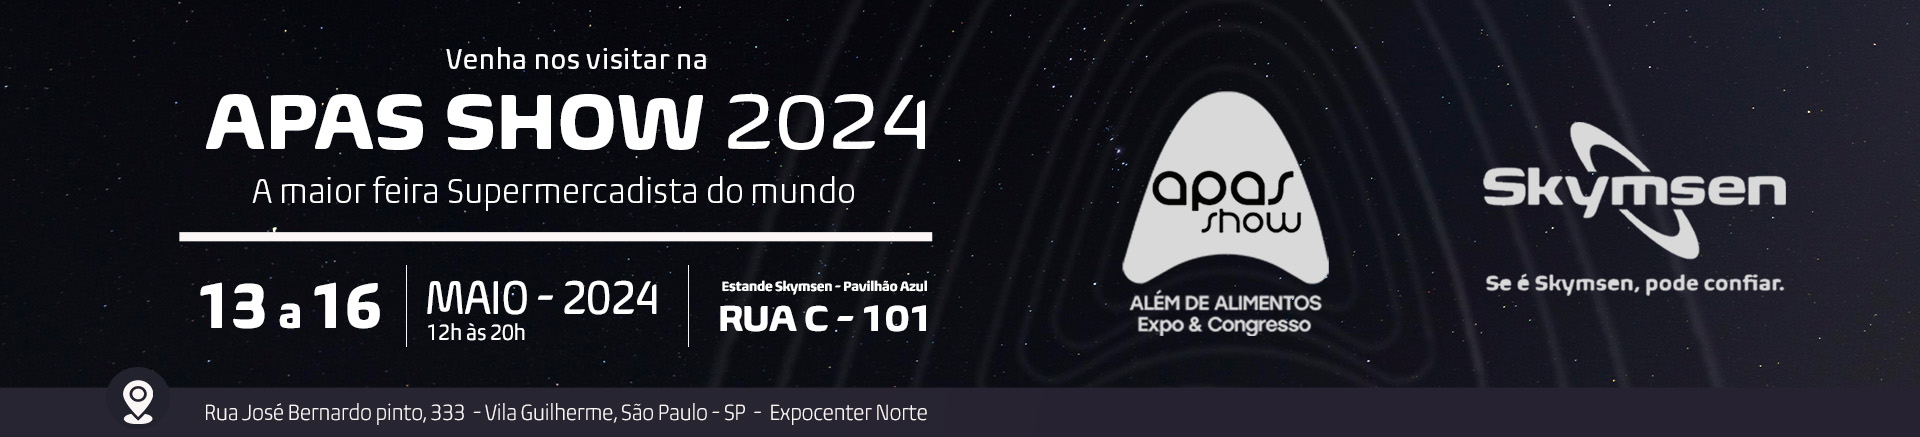 APAS 2024